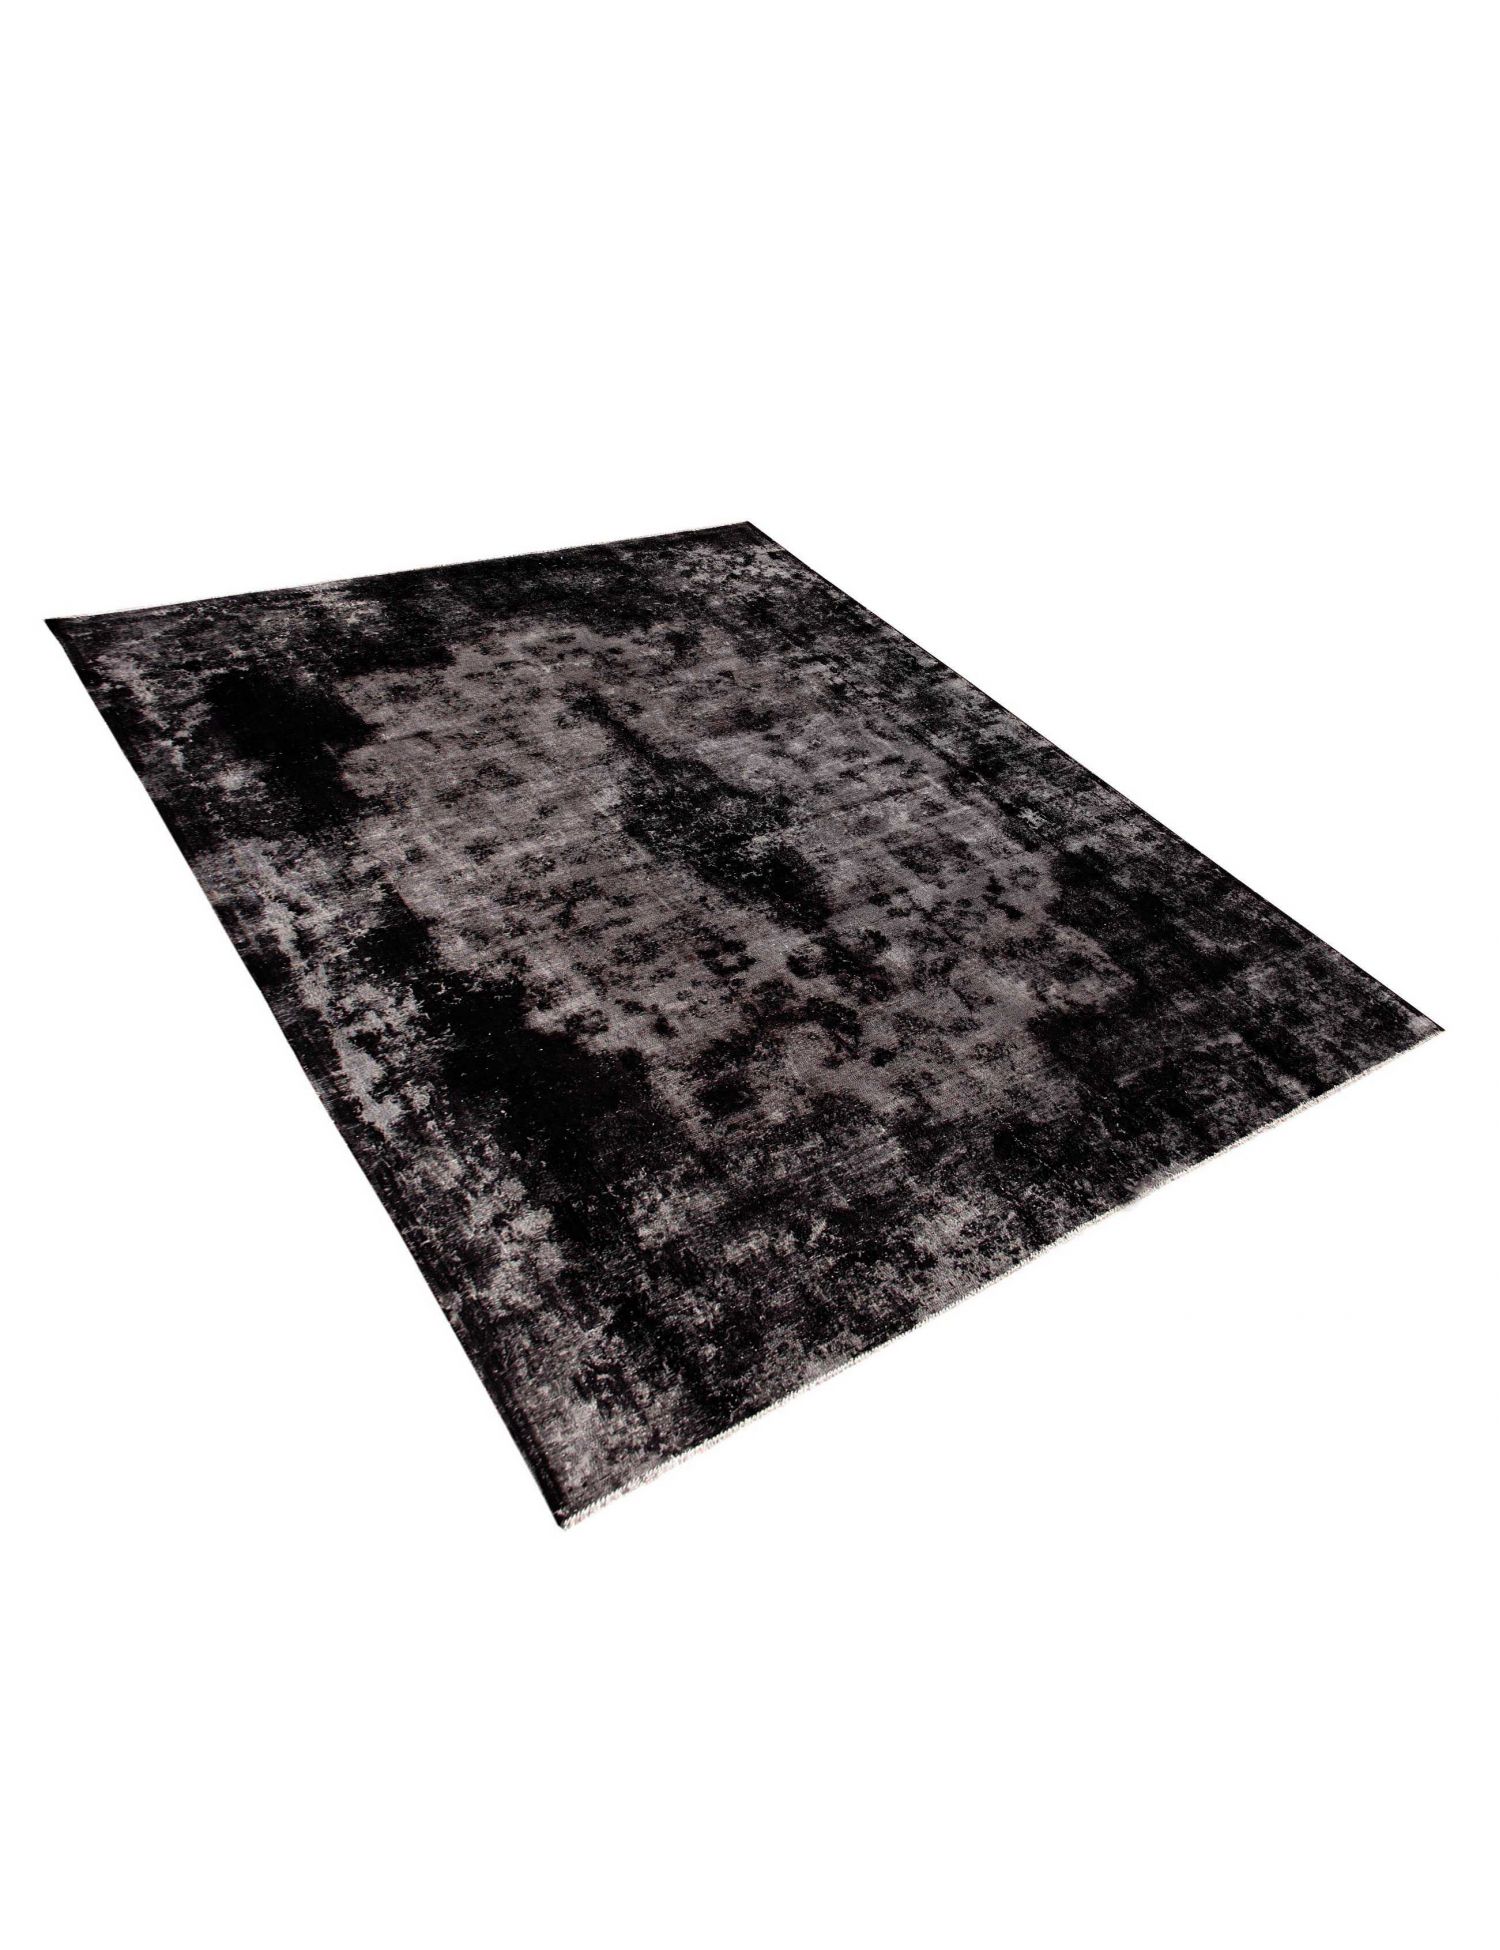 Persian Vintage Carpet  black <br/>356 x 262 cm